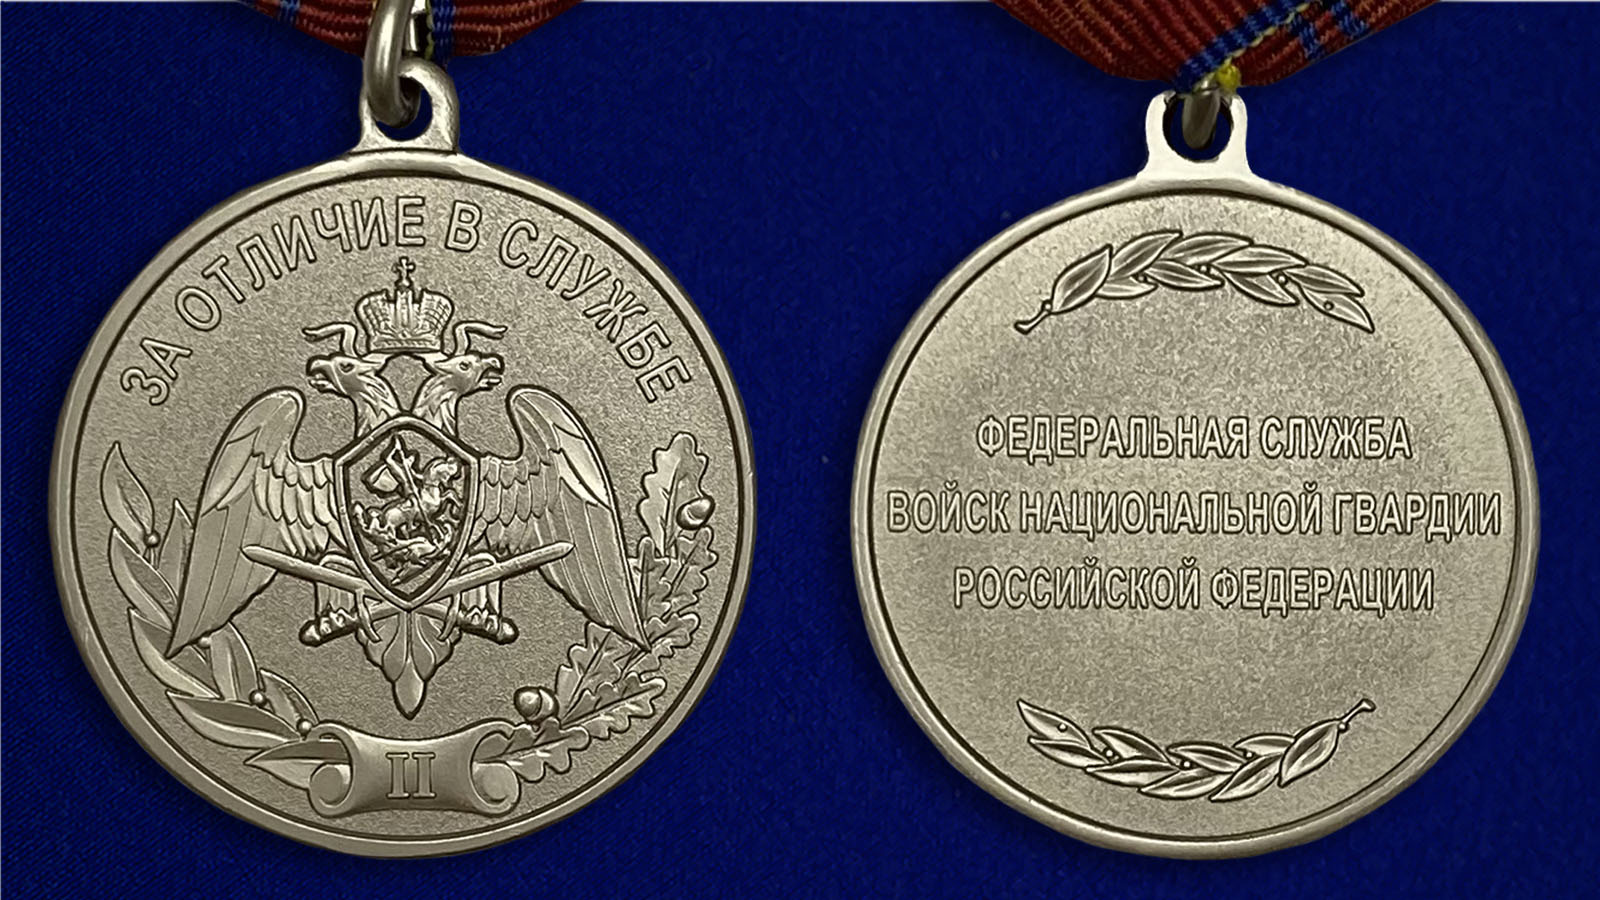 Описание медали Росгвардии "За отличие в службе" 2 степени